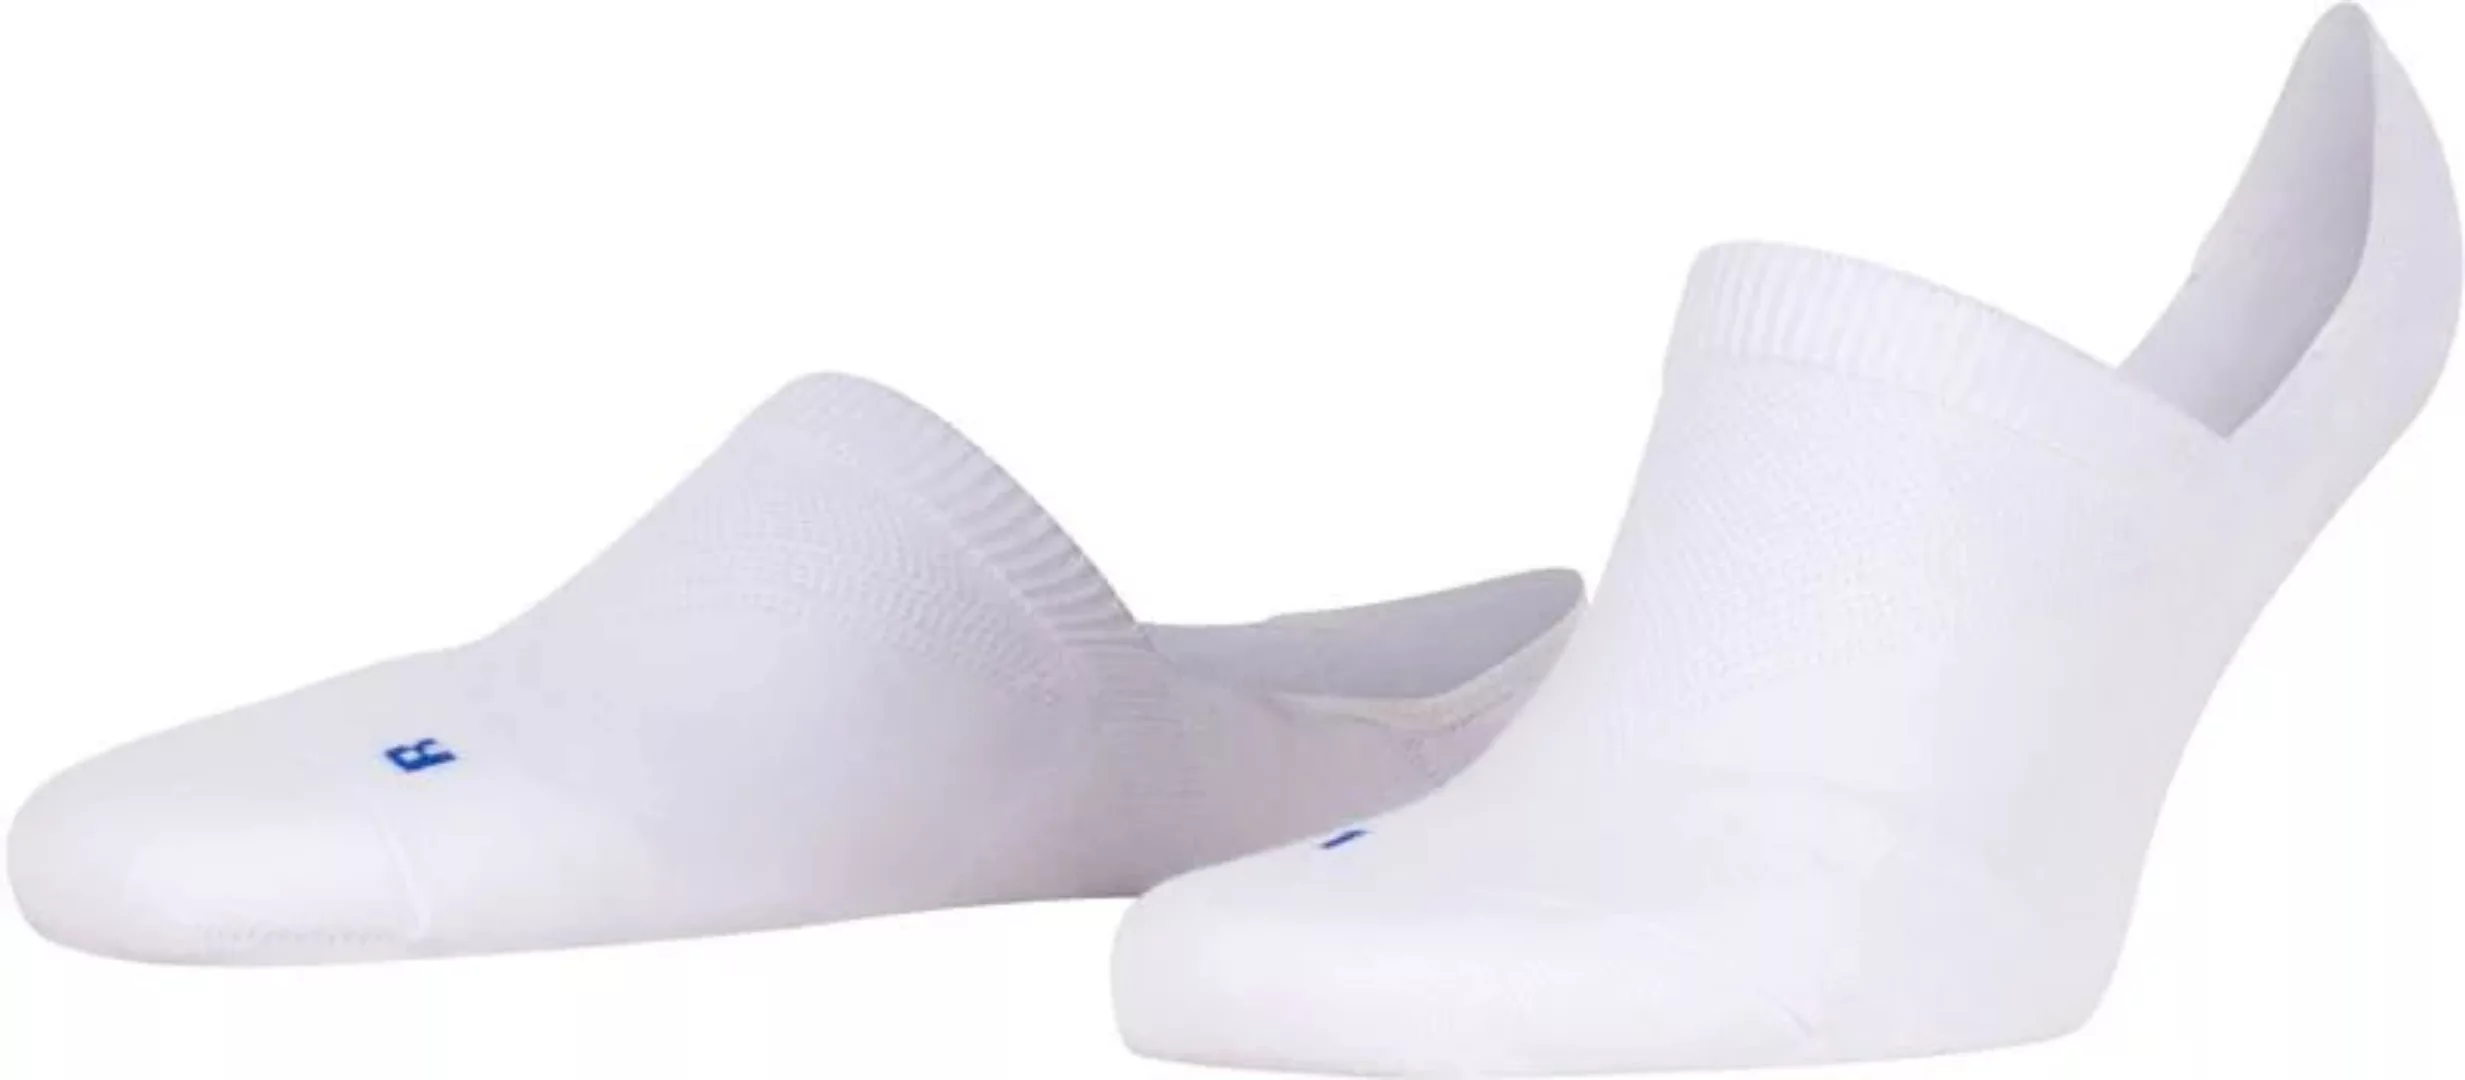 FALKE Cool Kick Antslip Socken Weiß - Größe 46-48 günstig online kaufen